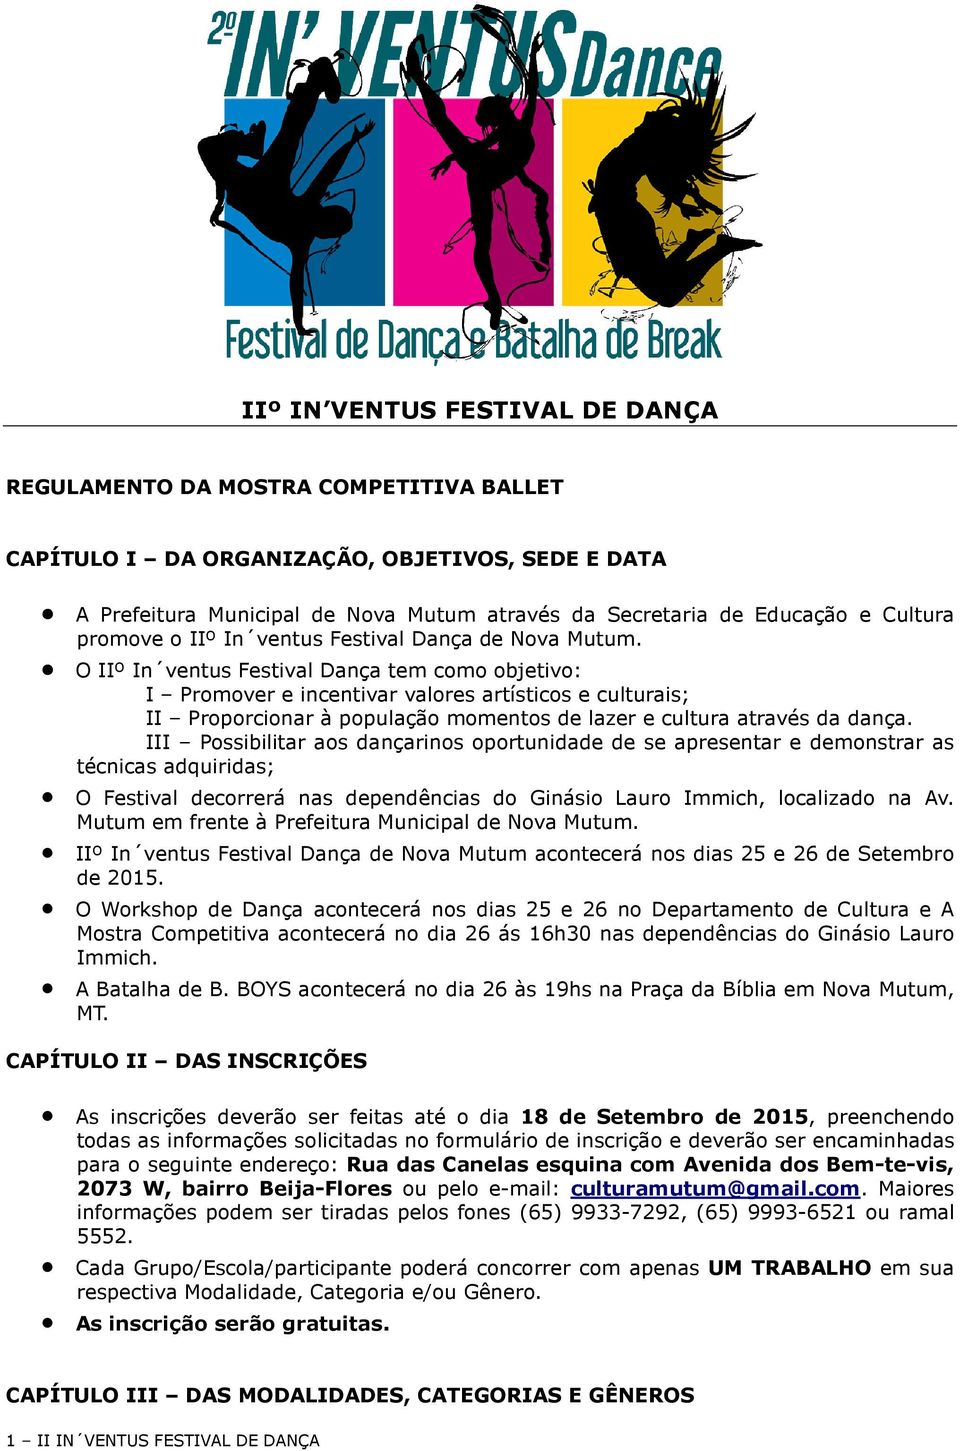 O IIº In ventus Festival Dança tem como objetivo: I Promover e incentivar valores artísticos e culturais; II Proporcionar à população momentos de lazer e cultura através da dança.